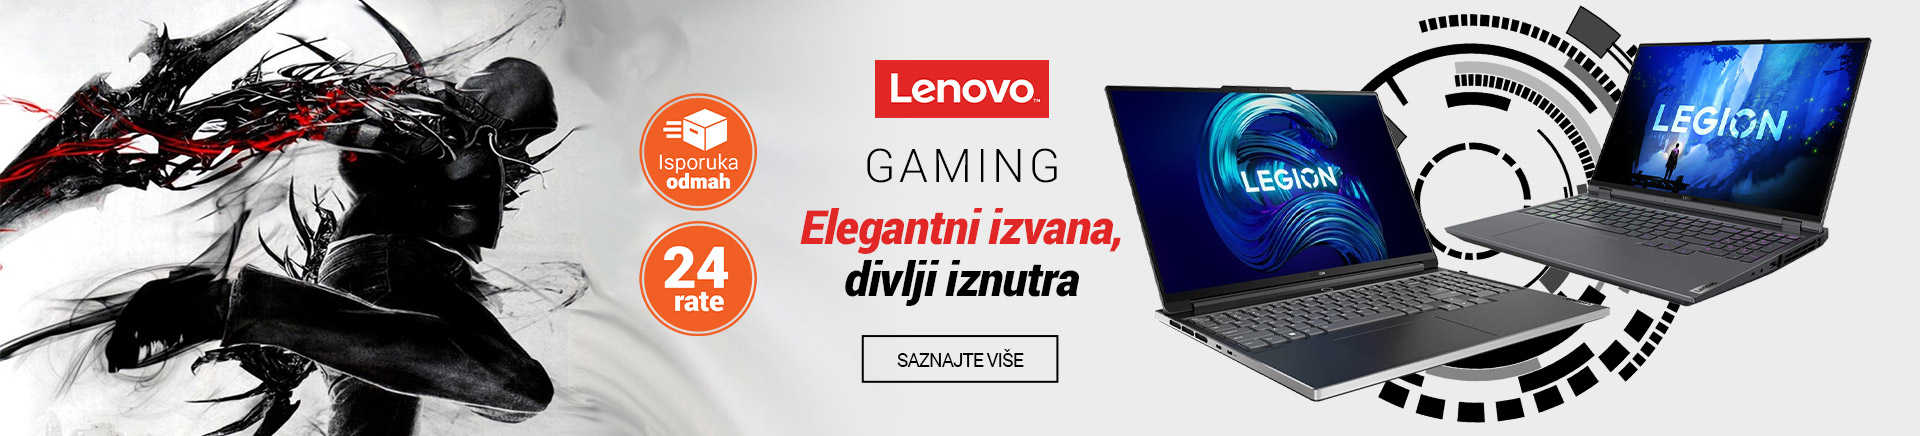 HR Lenovo gaming Elegantni Divlji MOBILE 380 X 436.jpg